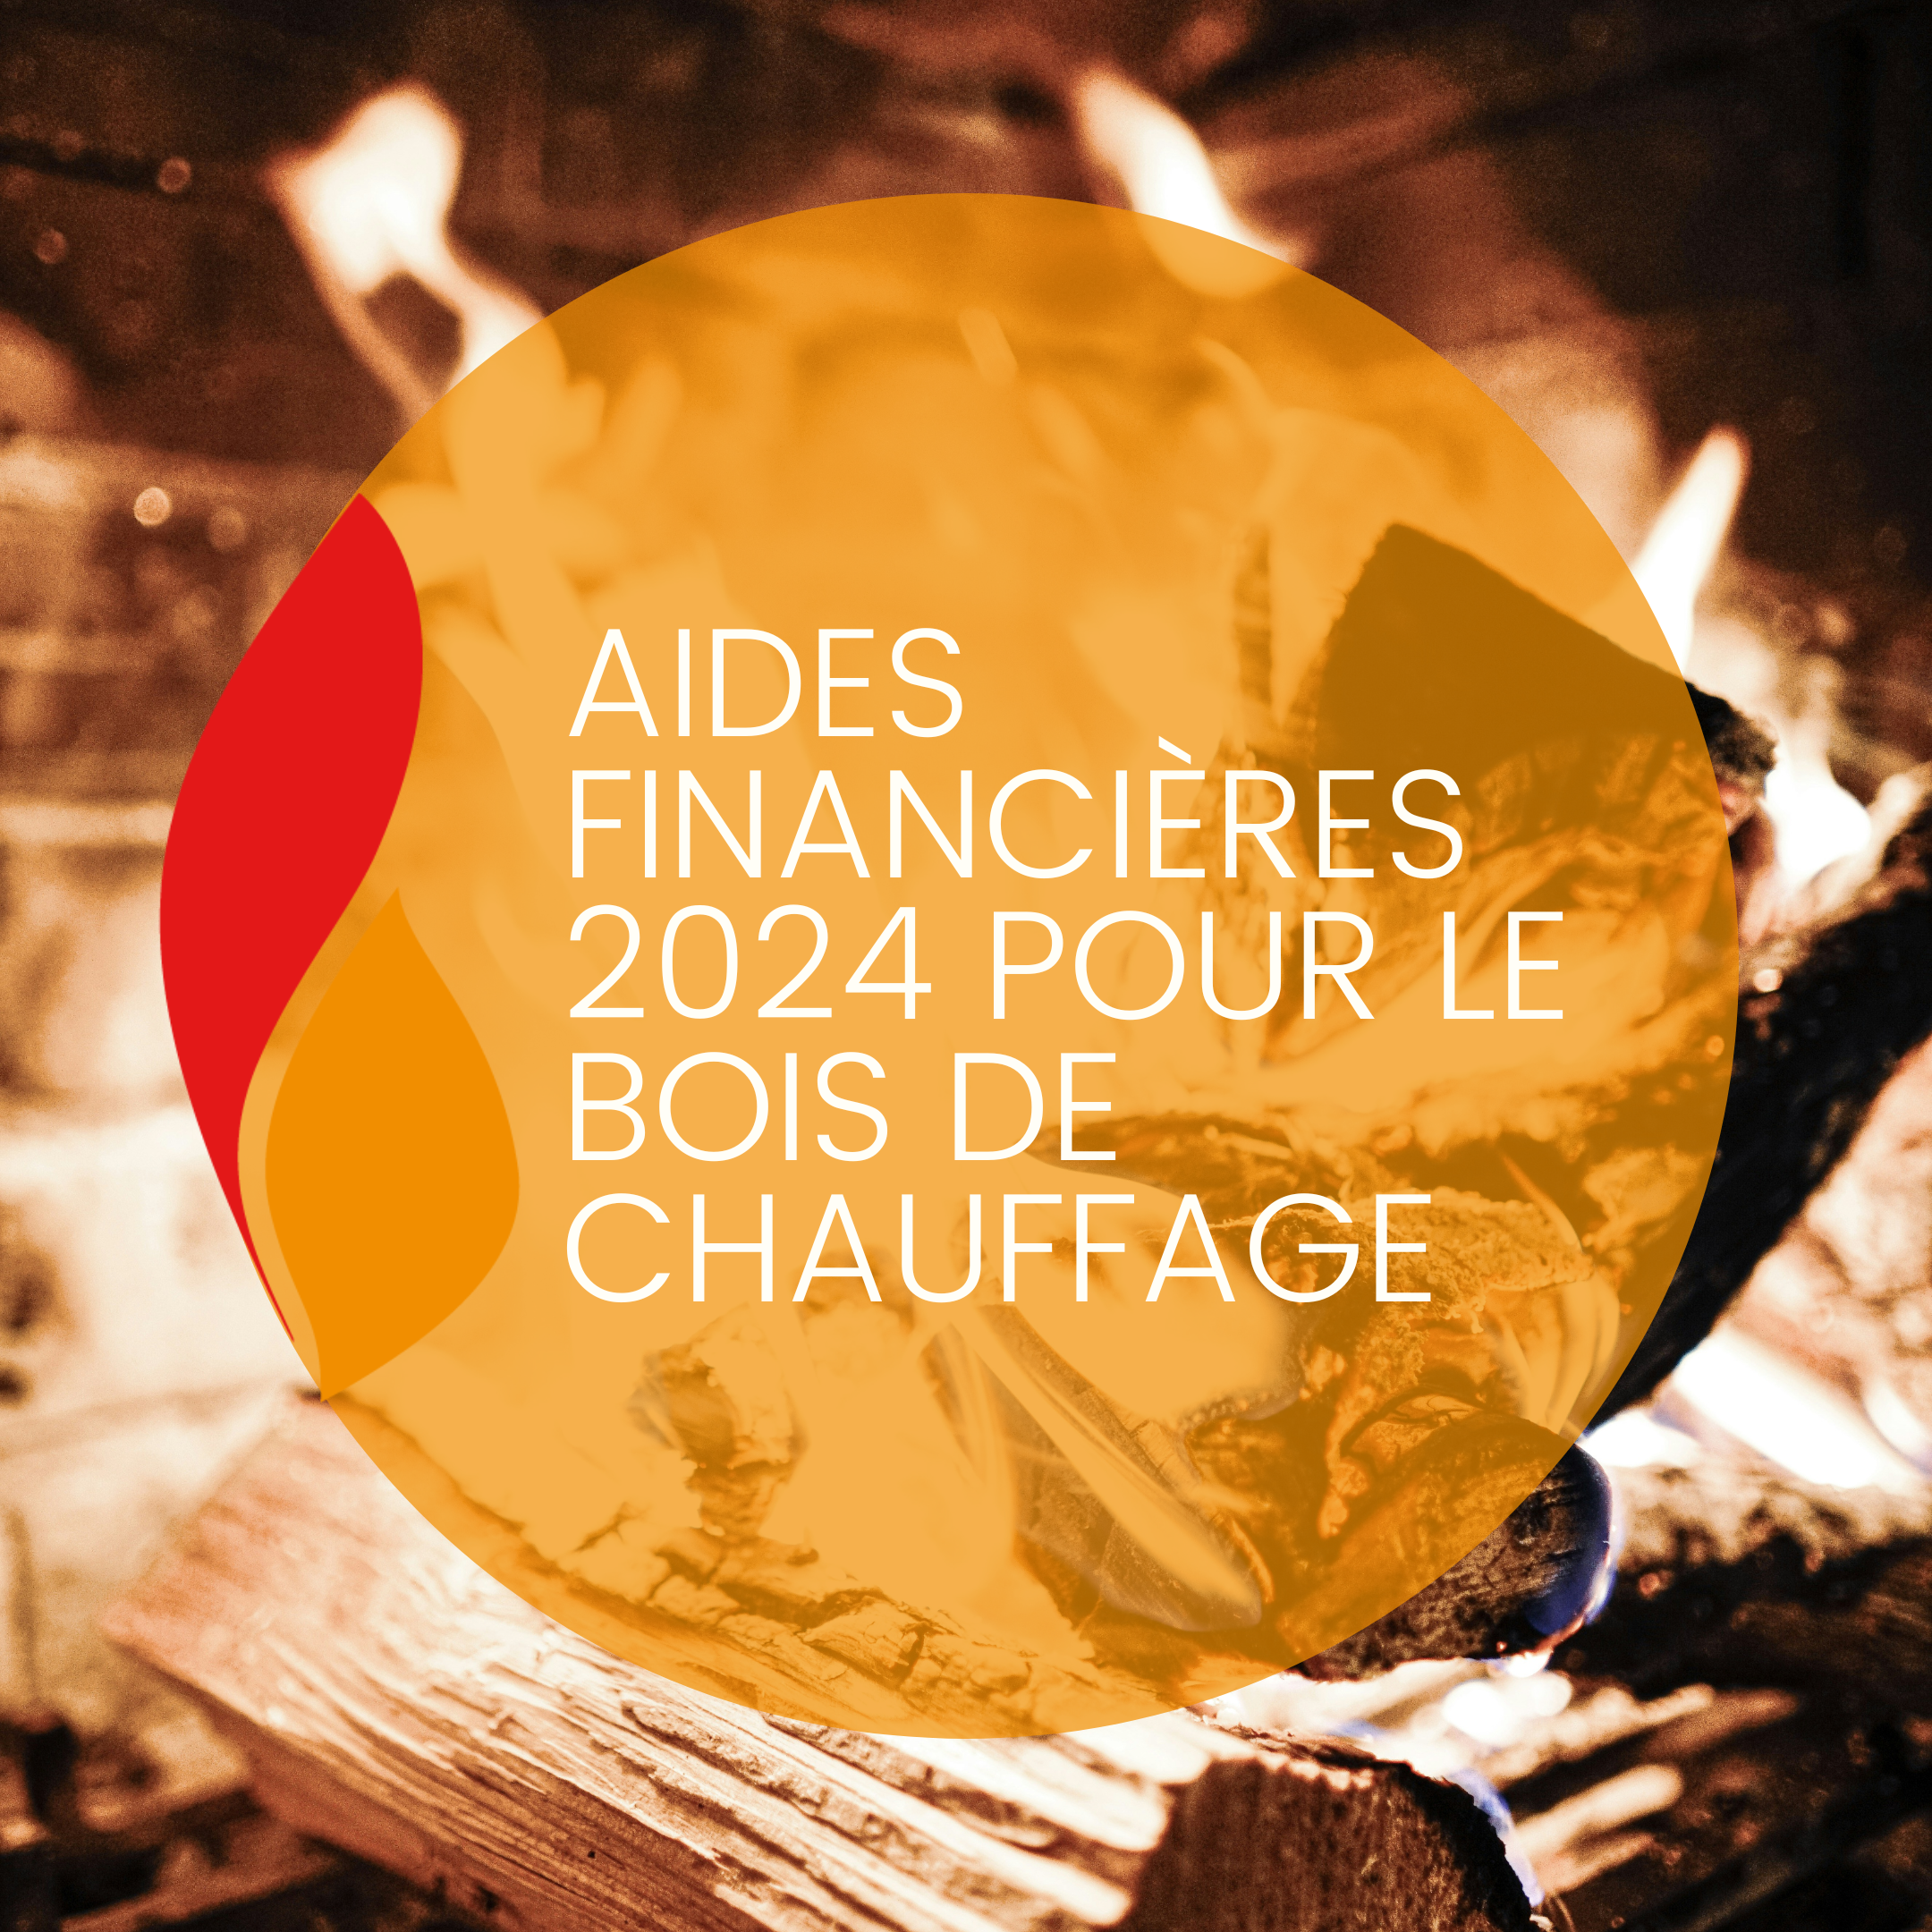 You are currently viewing Aides financières 2024 pour le bois de chauffage